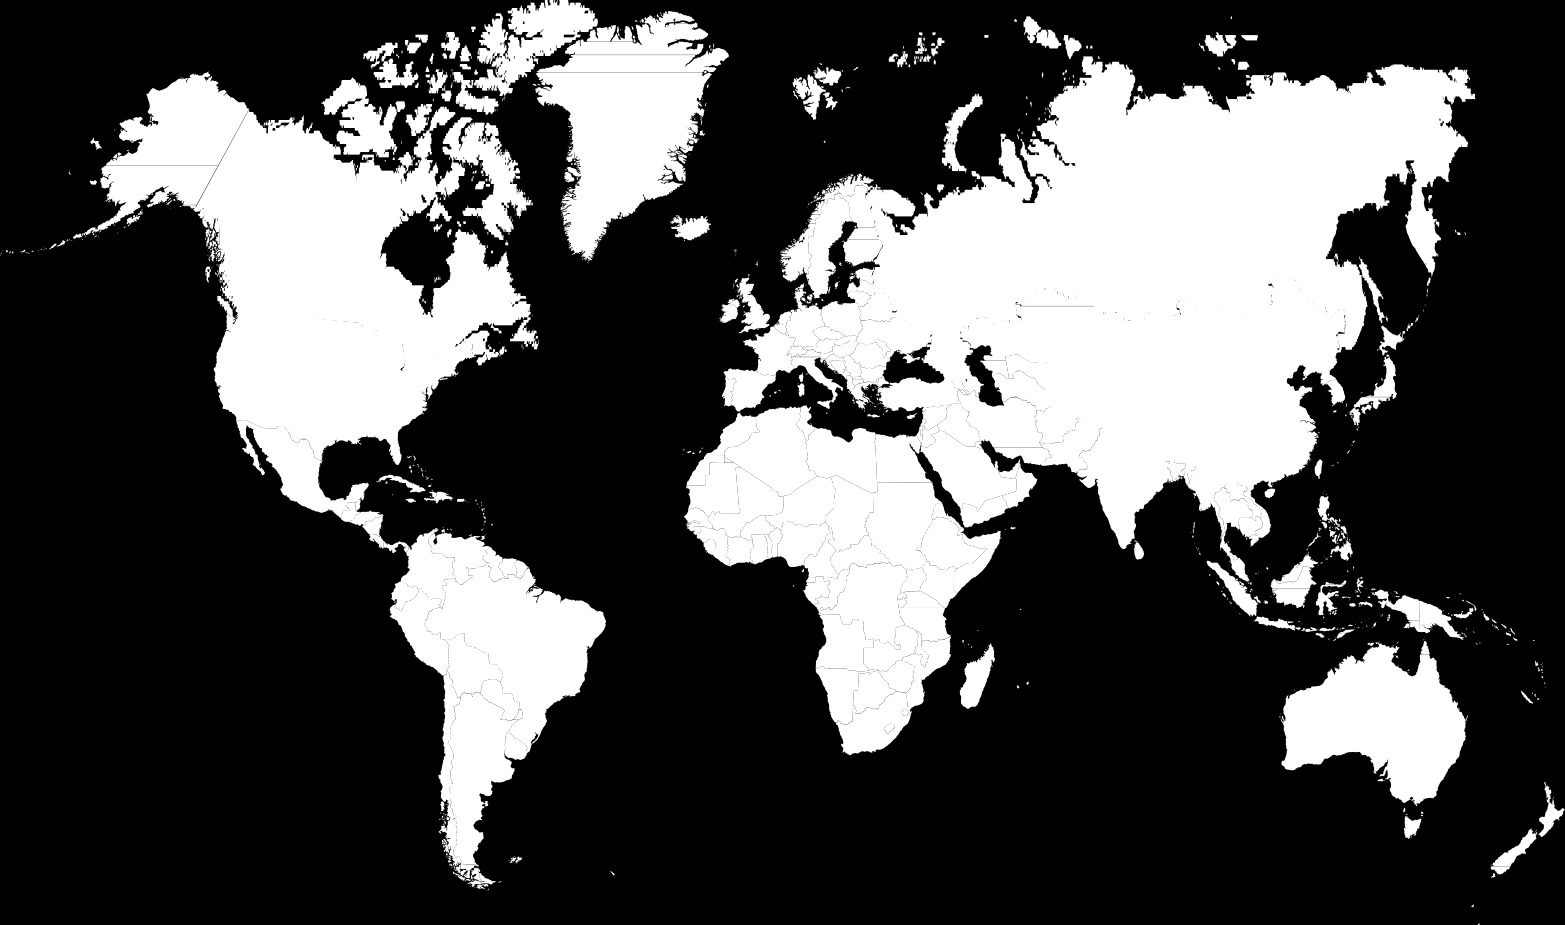 PaperlinX obszar działania Europa: Austria, Belgia, Czechy, Dania, Niemcy, Polska, Hiszpania, Holandia, Irlandia, Wielka